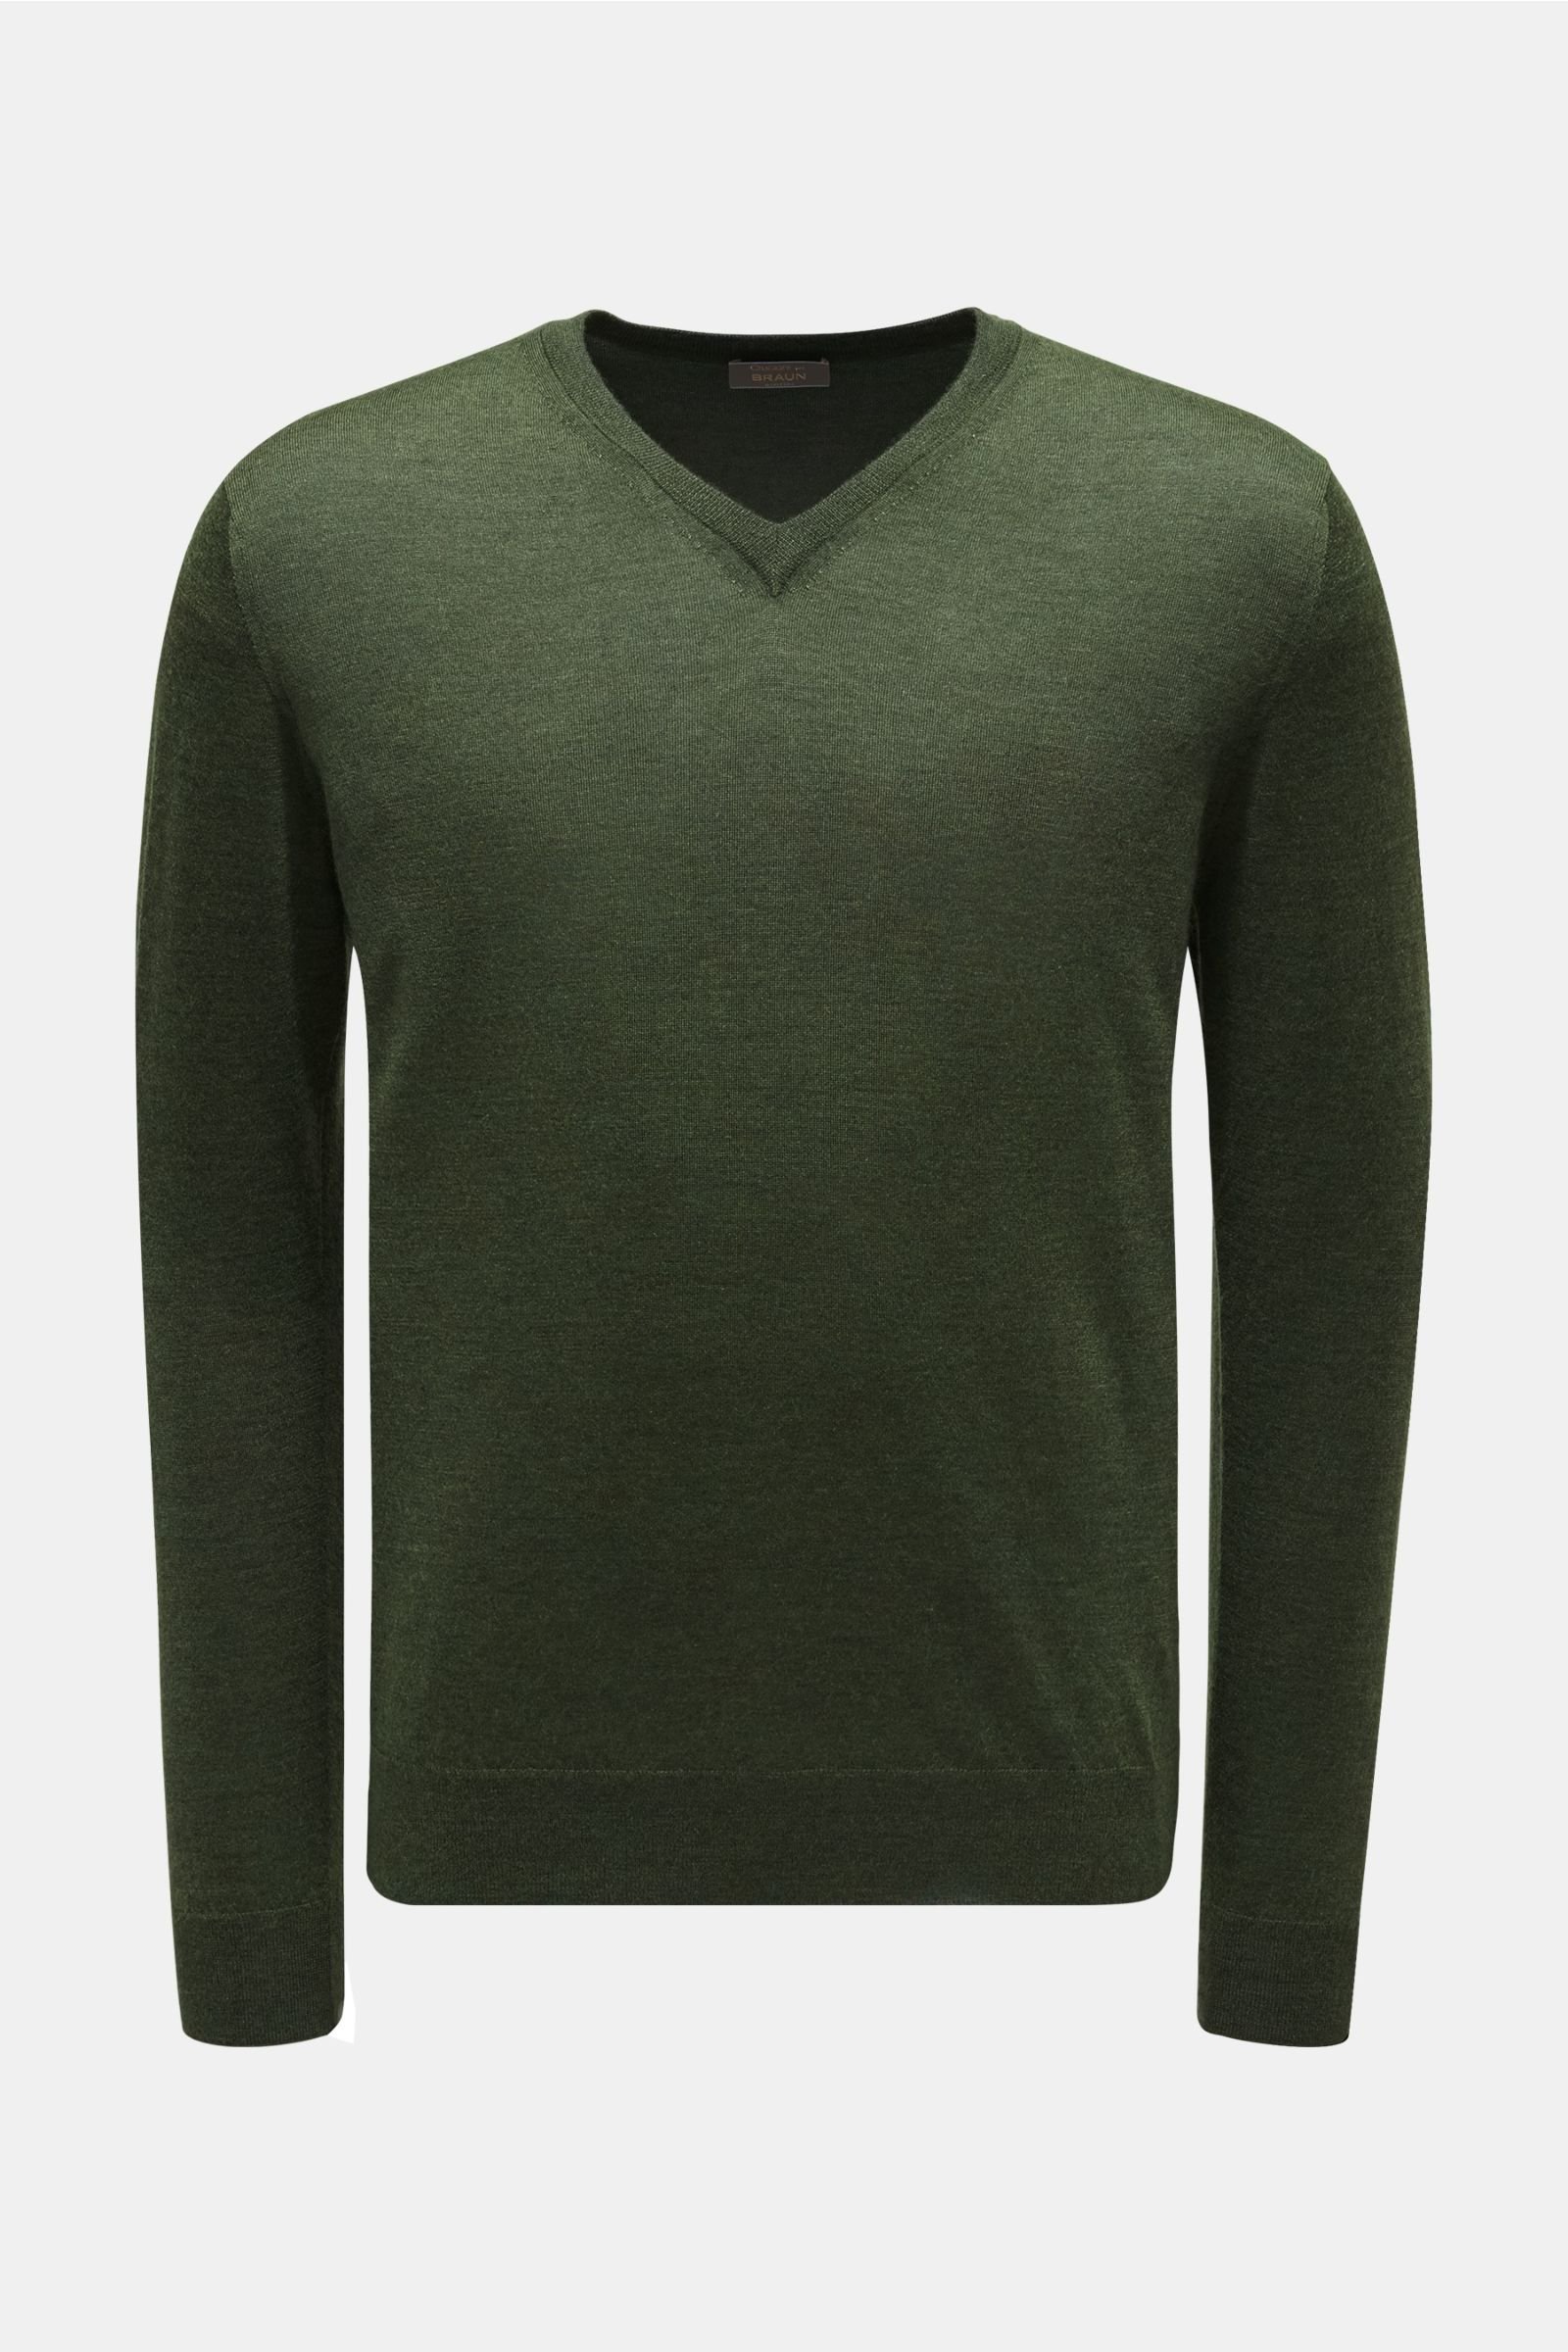 Feinstrick V-Neck Pullover dunkelgrün